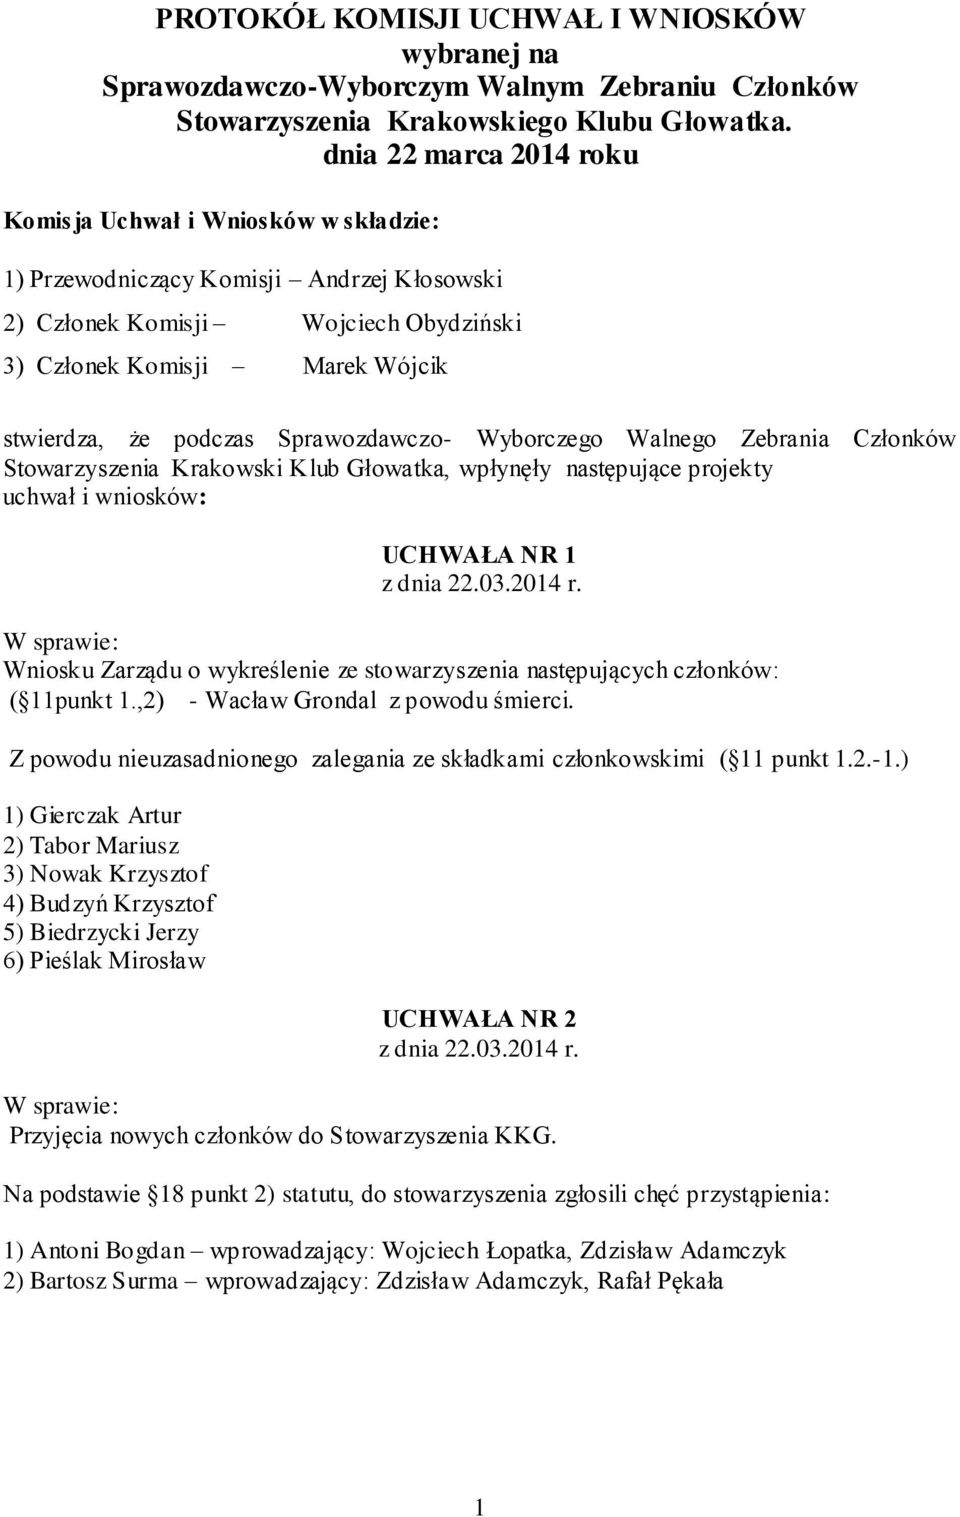 Sprawozdawczo- Wyborczego Walnego Zebrania Członków Stowarzyszenia Krakowski Klub Głowatka, wpłynęły następujące projekty uchwał i wniosków: UCHWAŁA NR 1 Wniosku Zarządu o wykreślenie ze